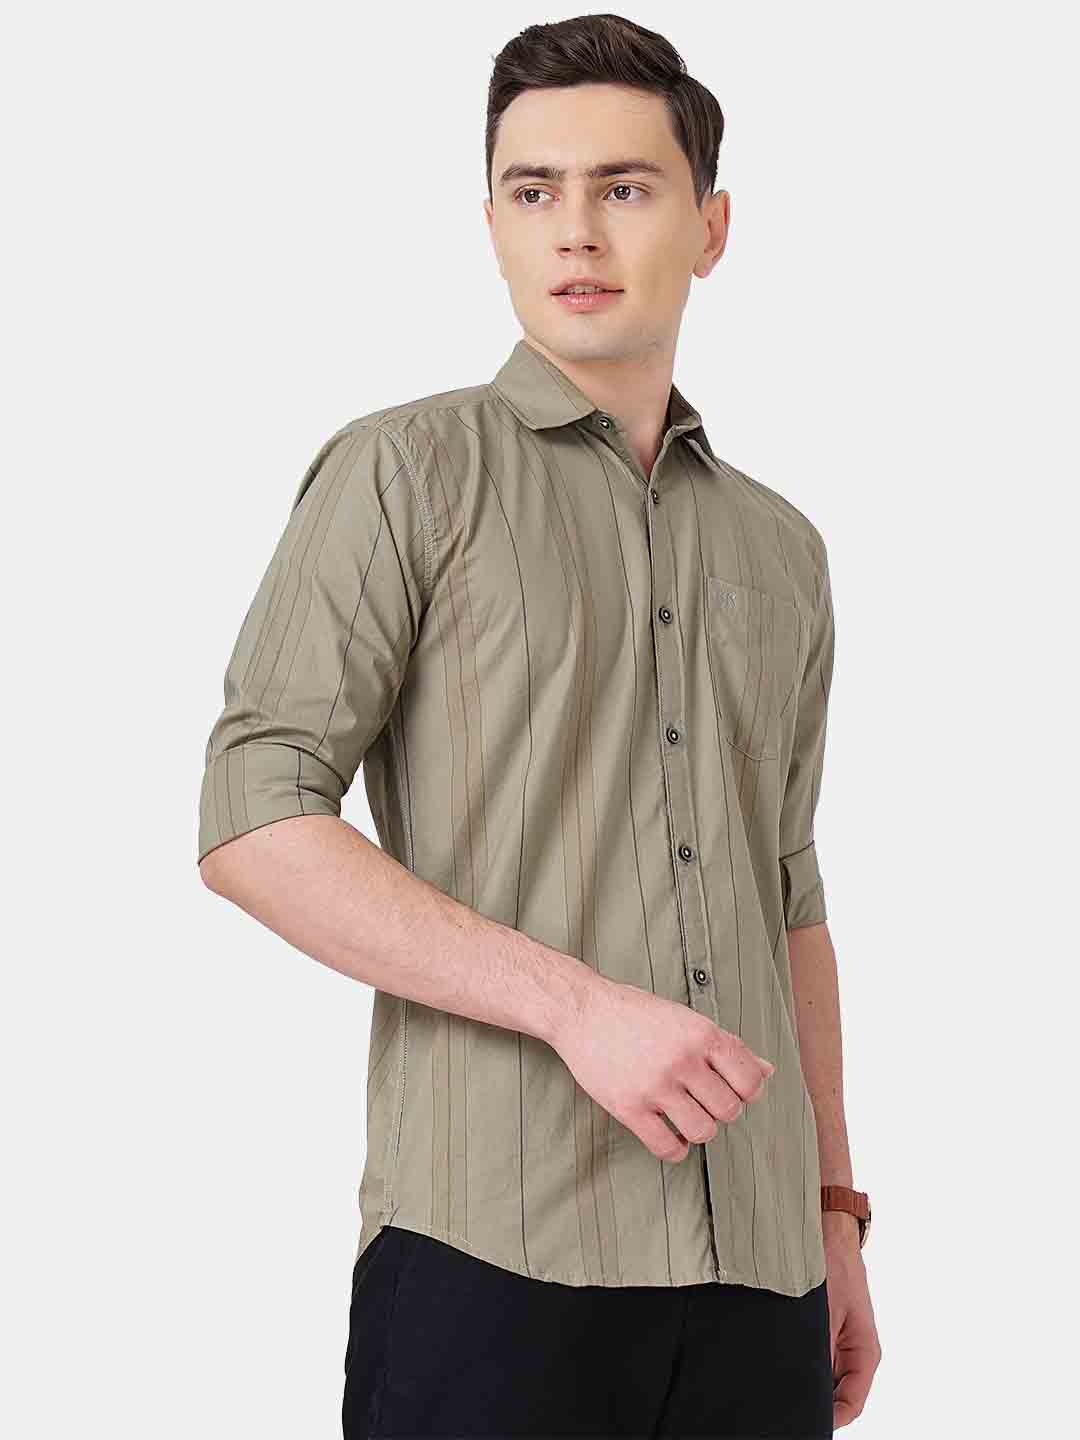 Sandrift Stripe Shirt